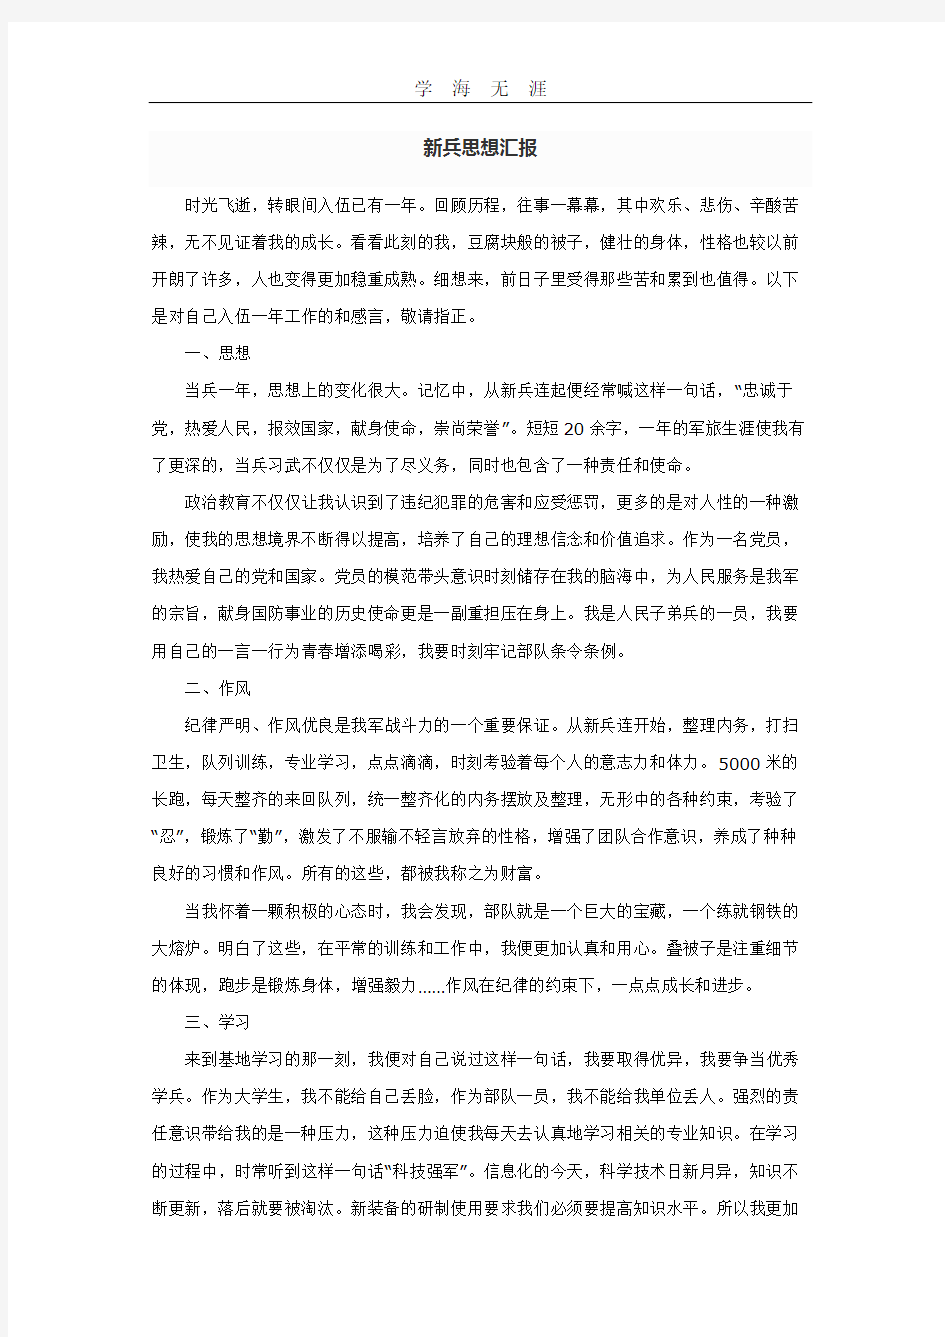 新兵思想汇报.pdf